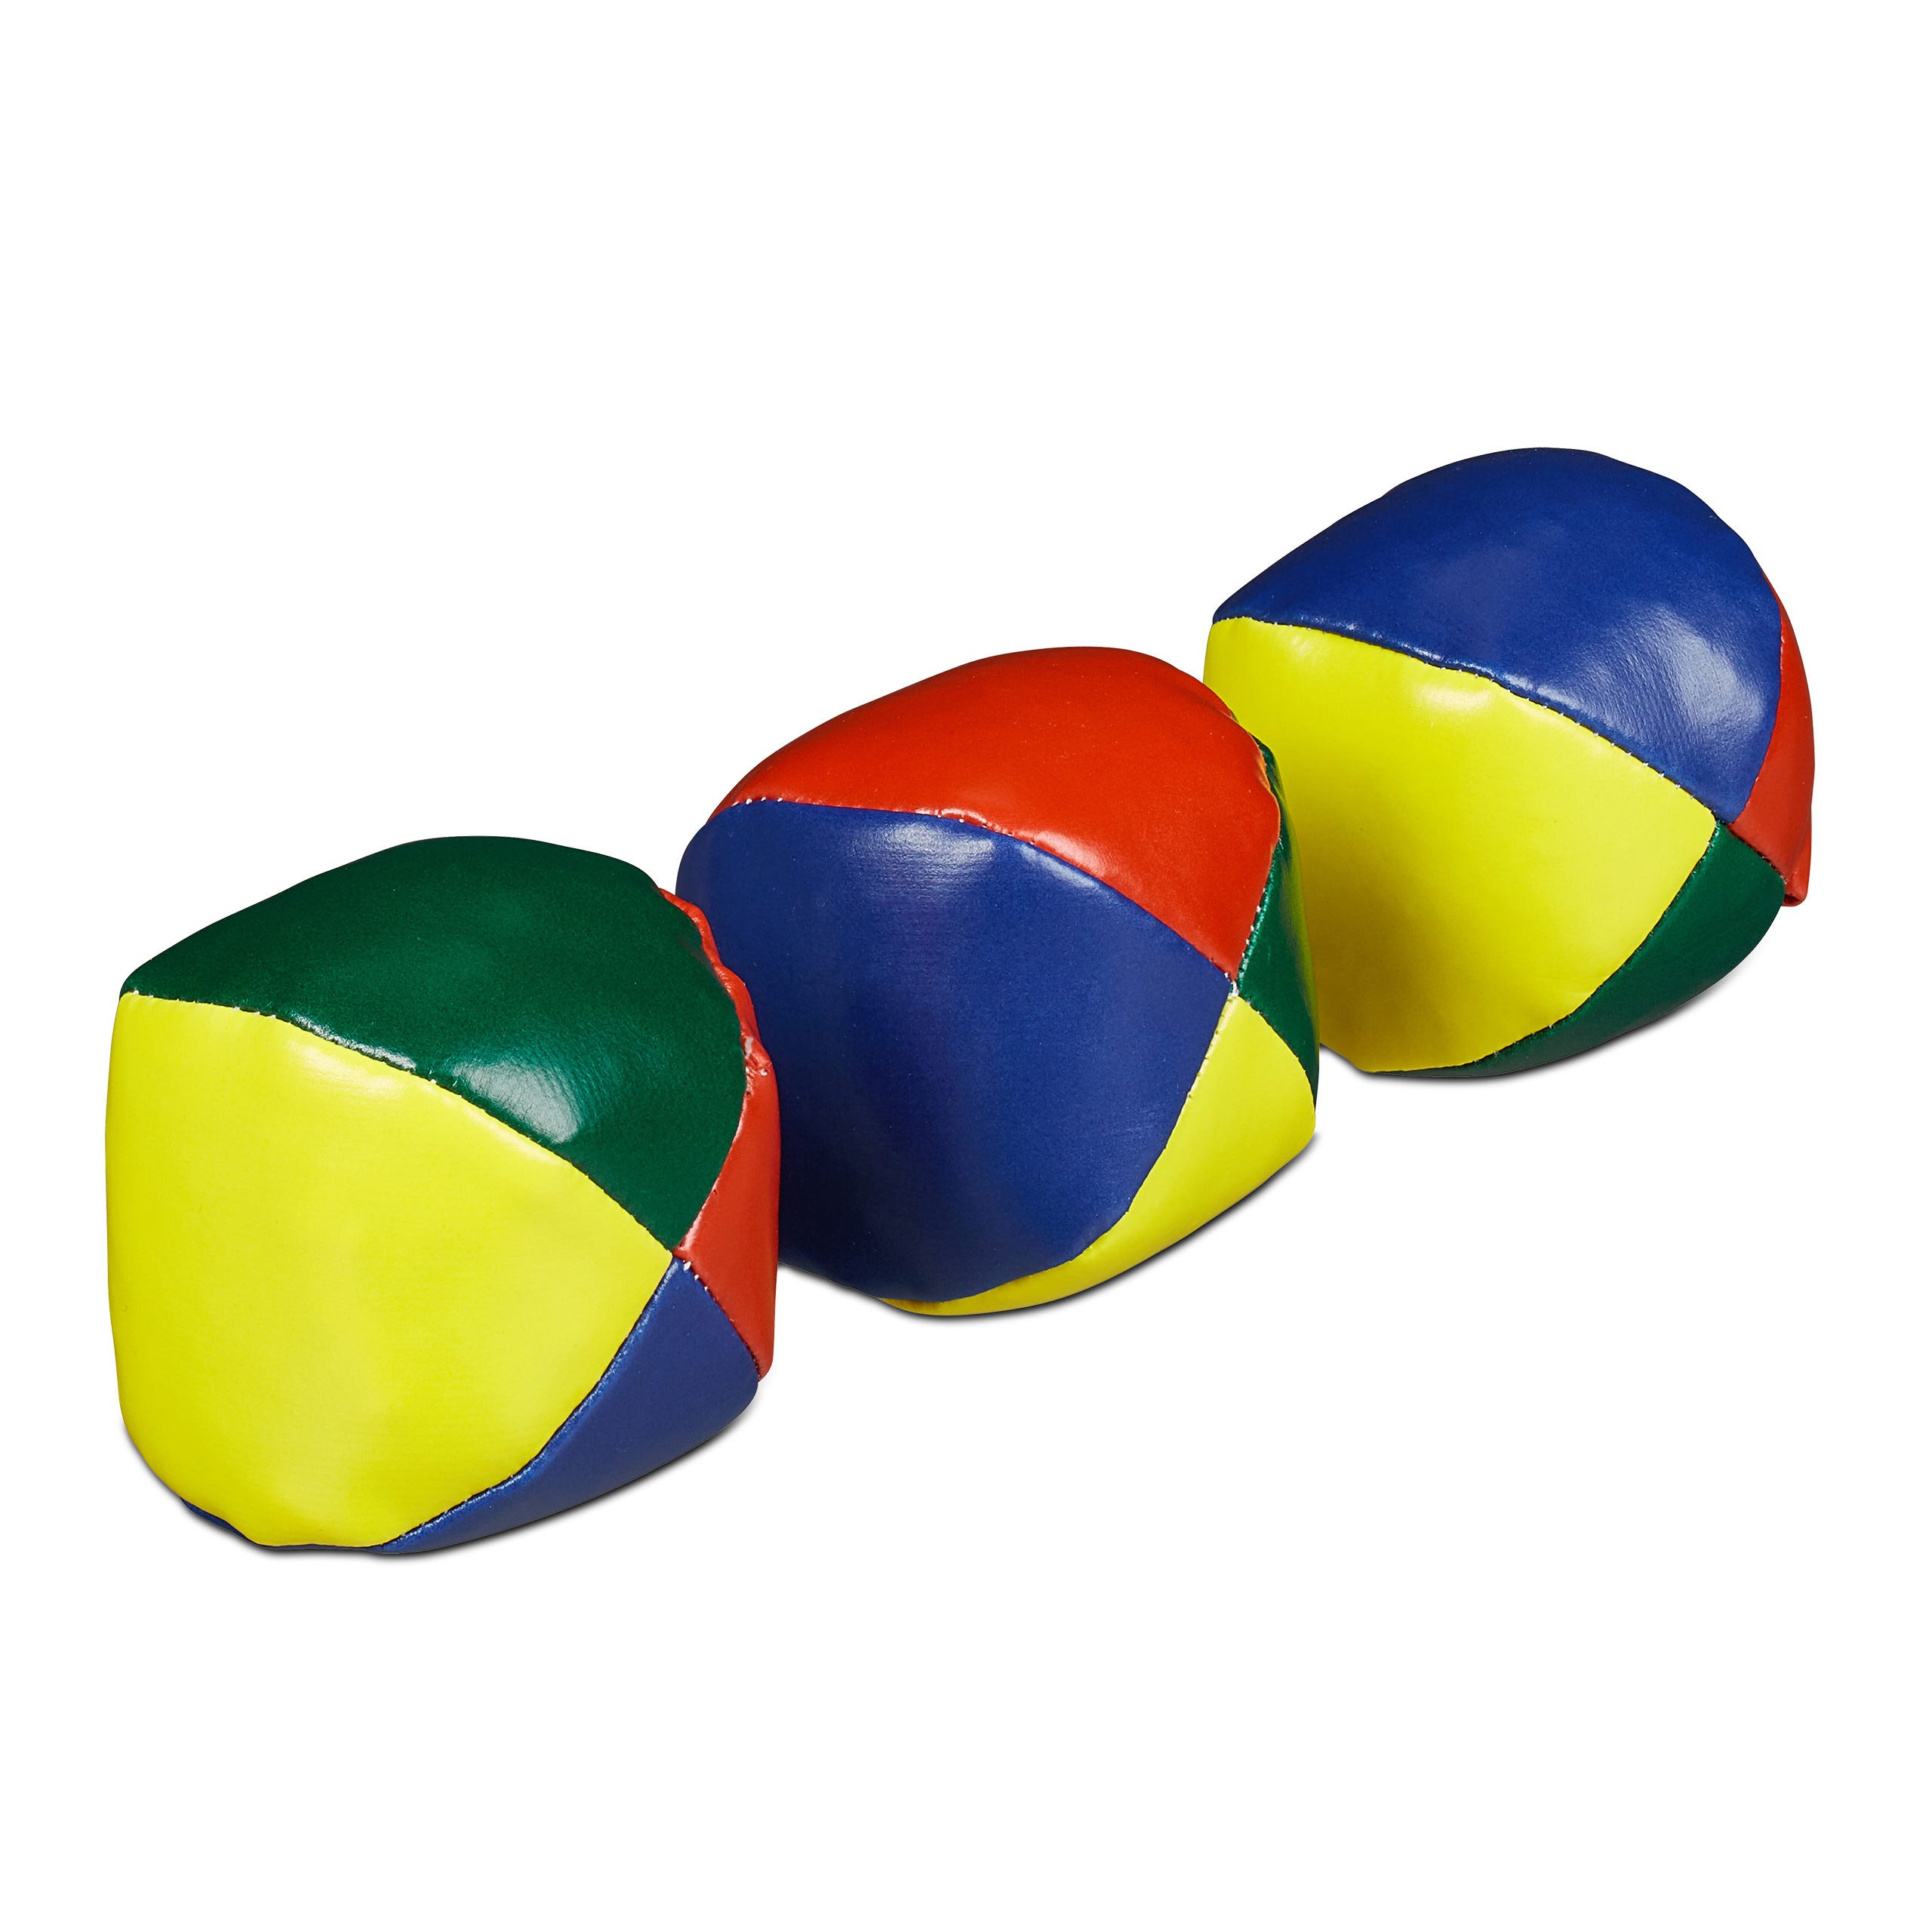 Relaxdays Balle de jonglage en lot de 3, professionnels et amateurs,  enfants et adultes, set pratique, Ø 6 cm, coloré